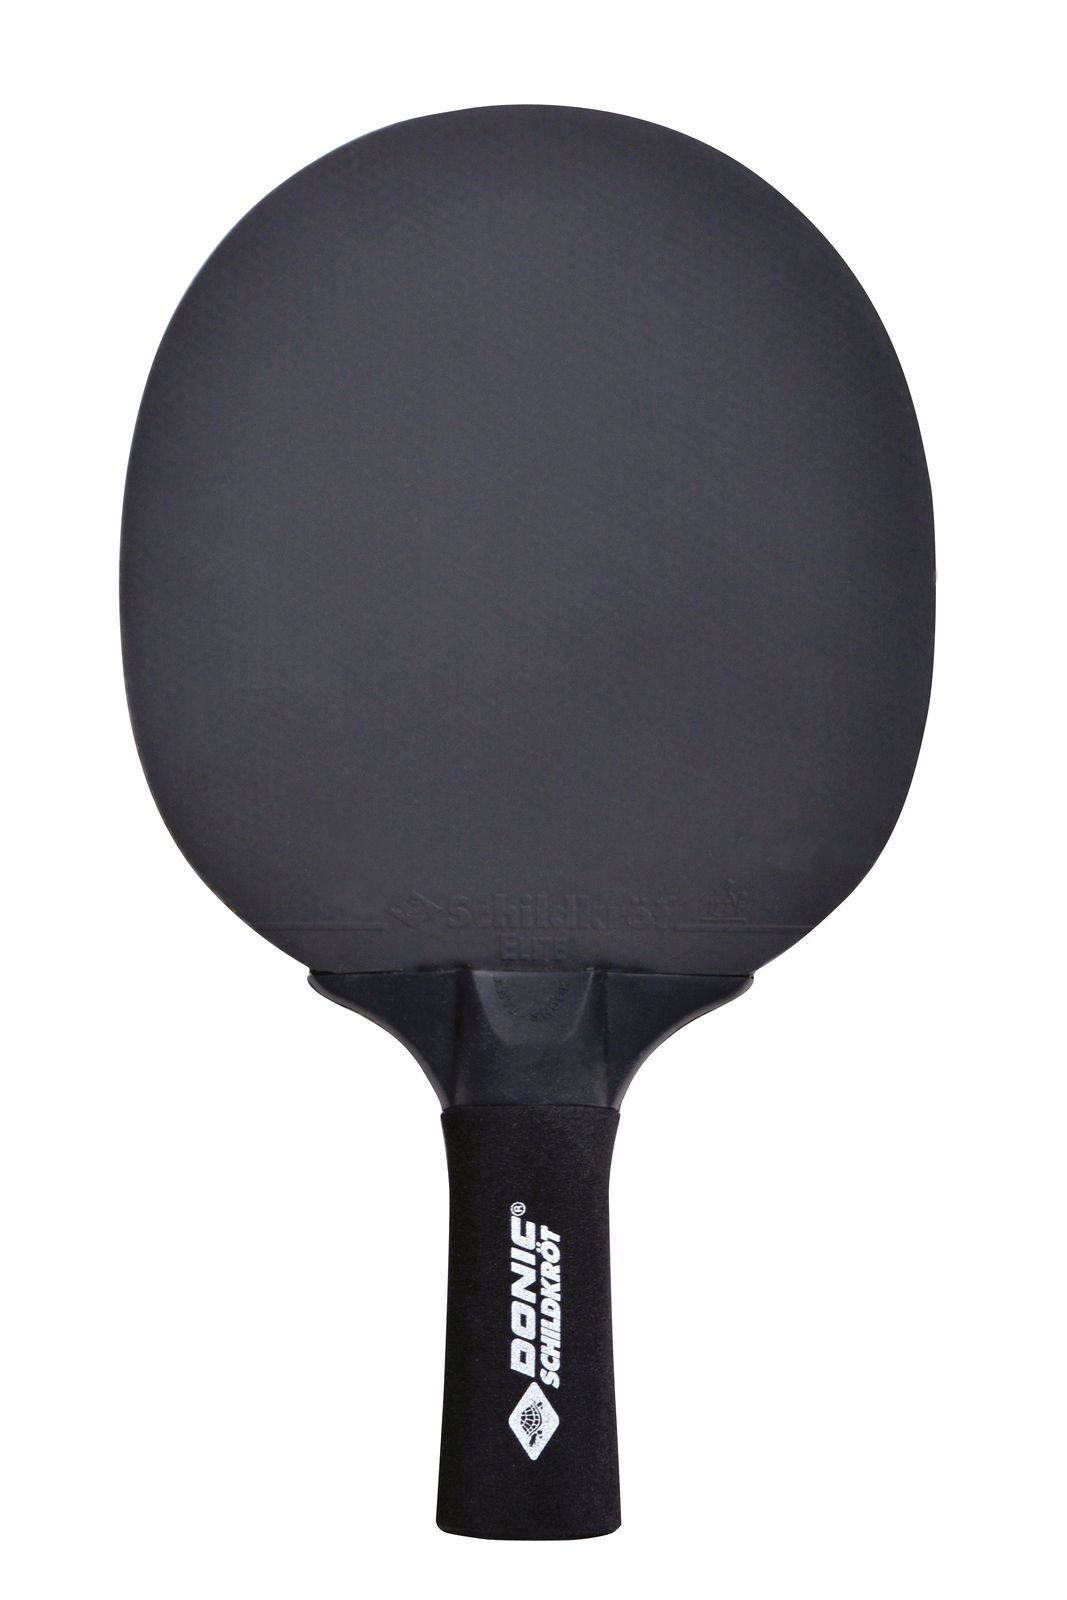 Tischtennisschläger Racket Donic-Schildkröt Schläger Sensation Bat Tischtennis Table Line 500, Tennis